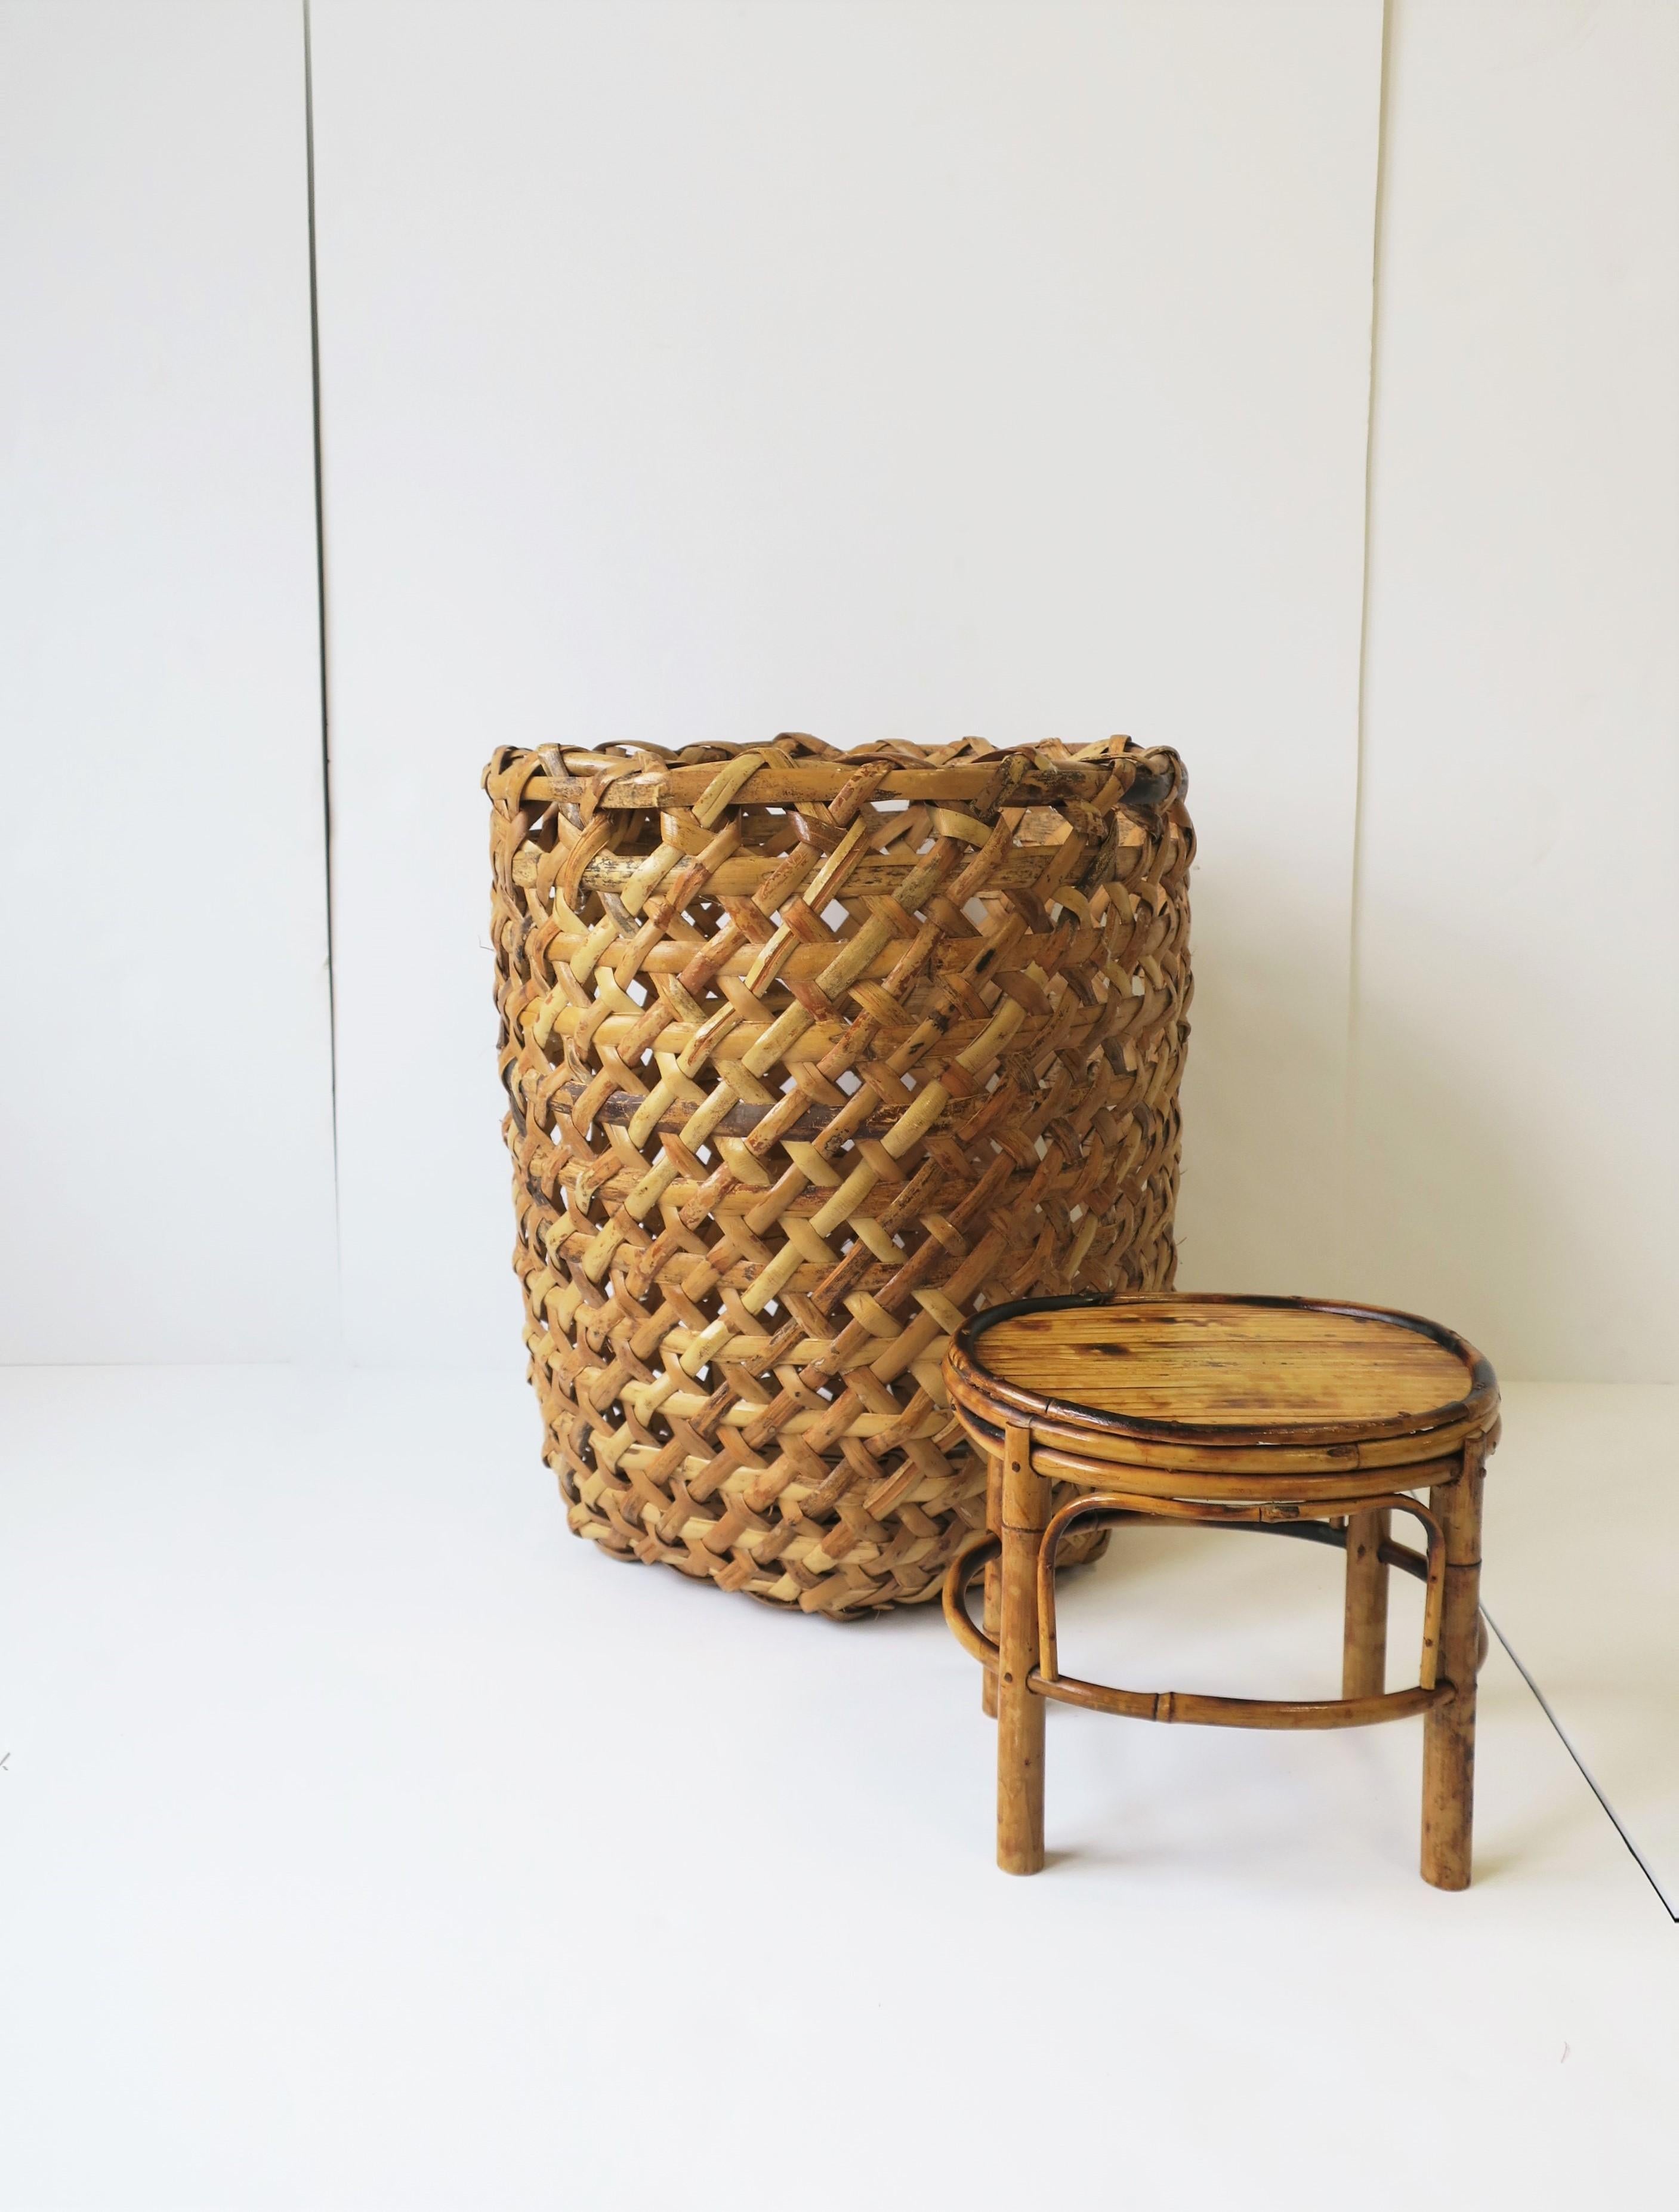 Vintage Wicker Basket Hamper Umbrella Stand Storage Piece Cachepot 5